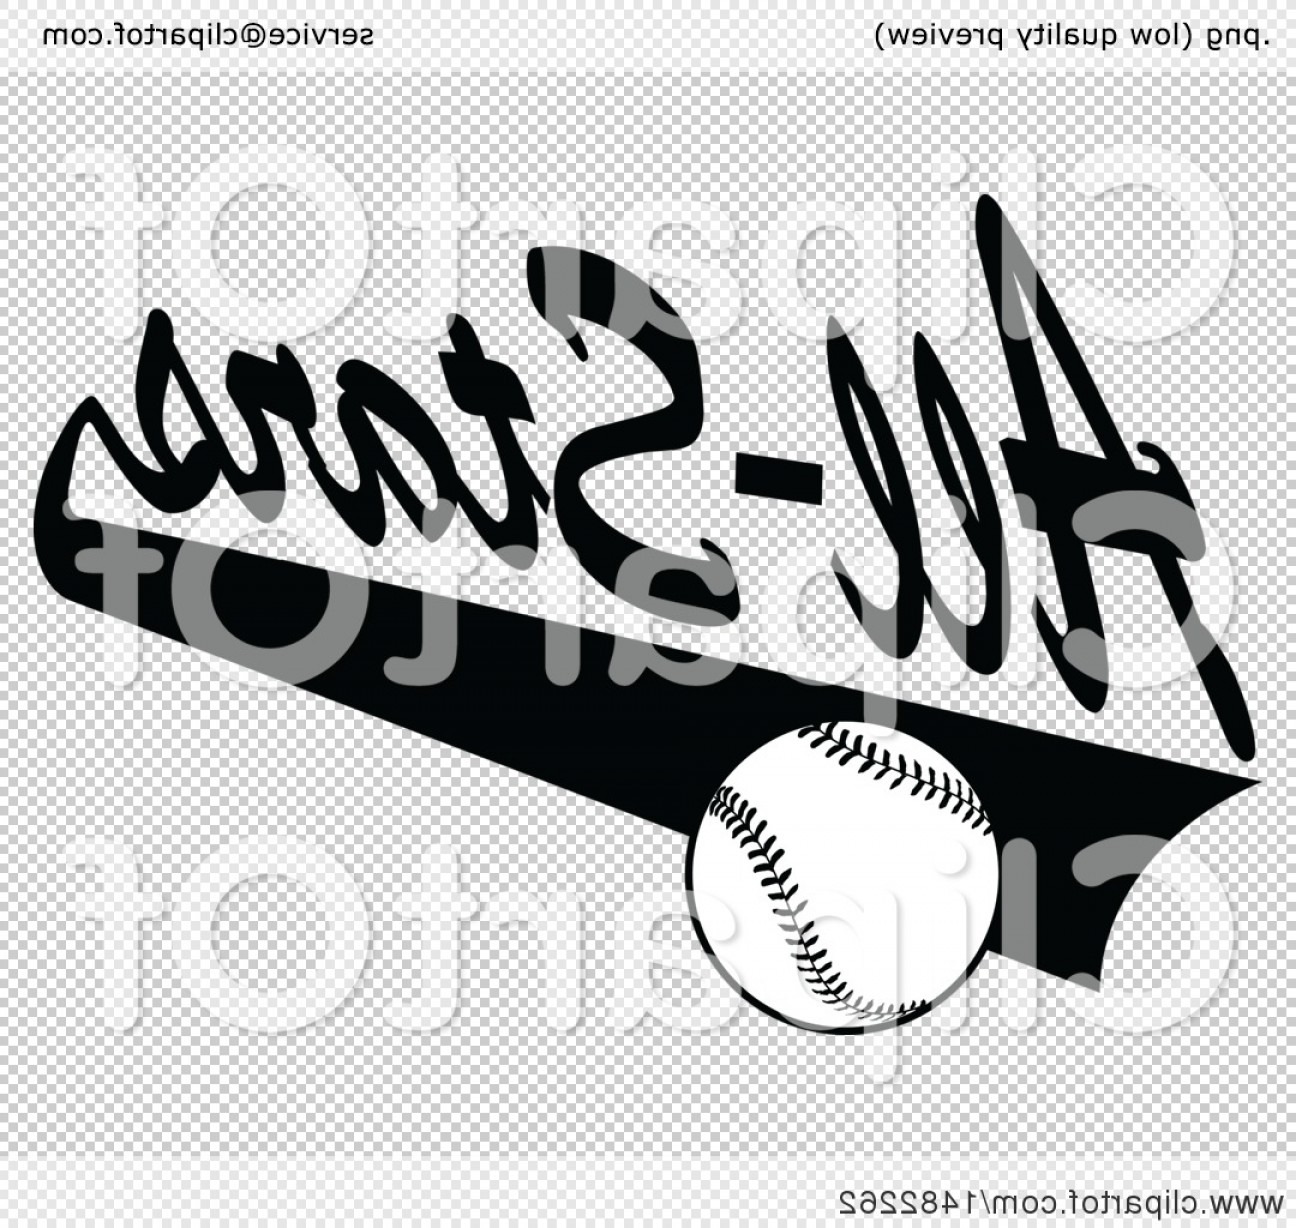 Baseball Swoosh Vector at Vectorified.com | Collection of Baseball